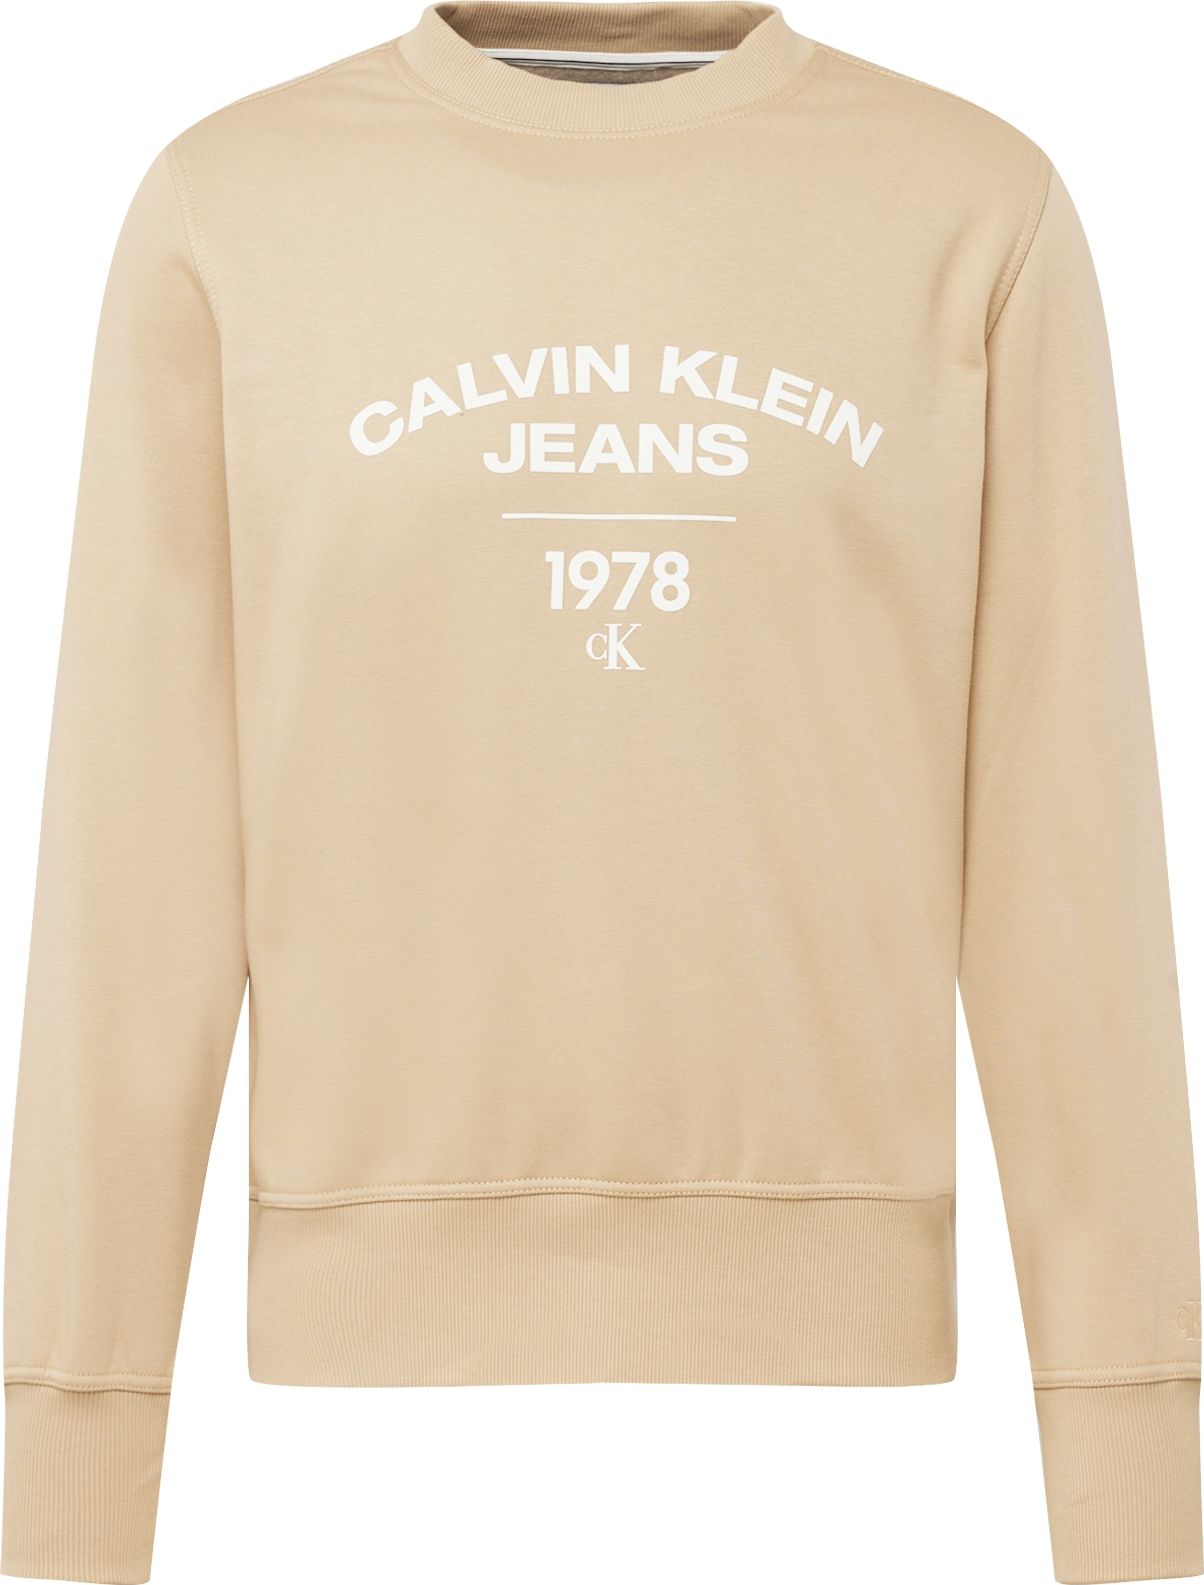 Mikina Calvin Klein Jeans velbloudí / bílá